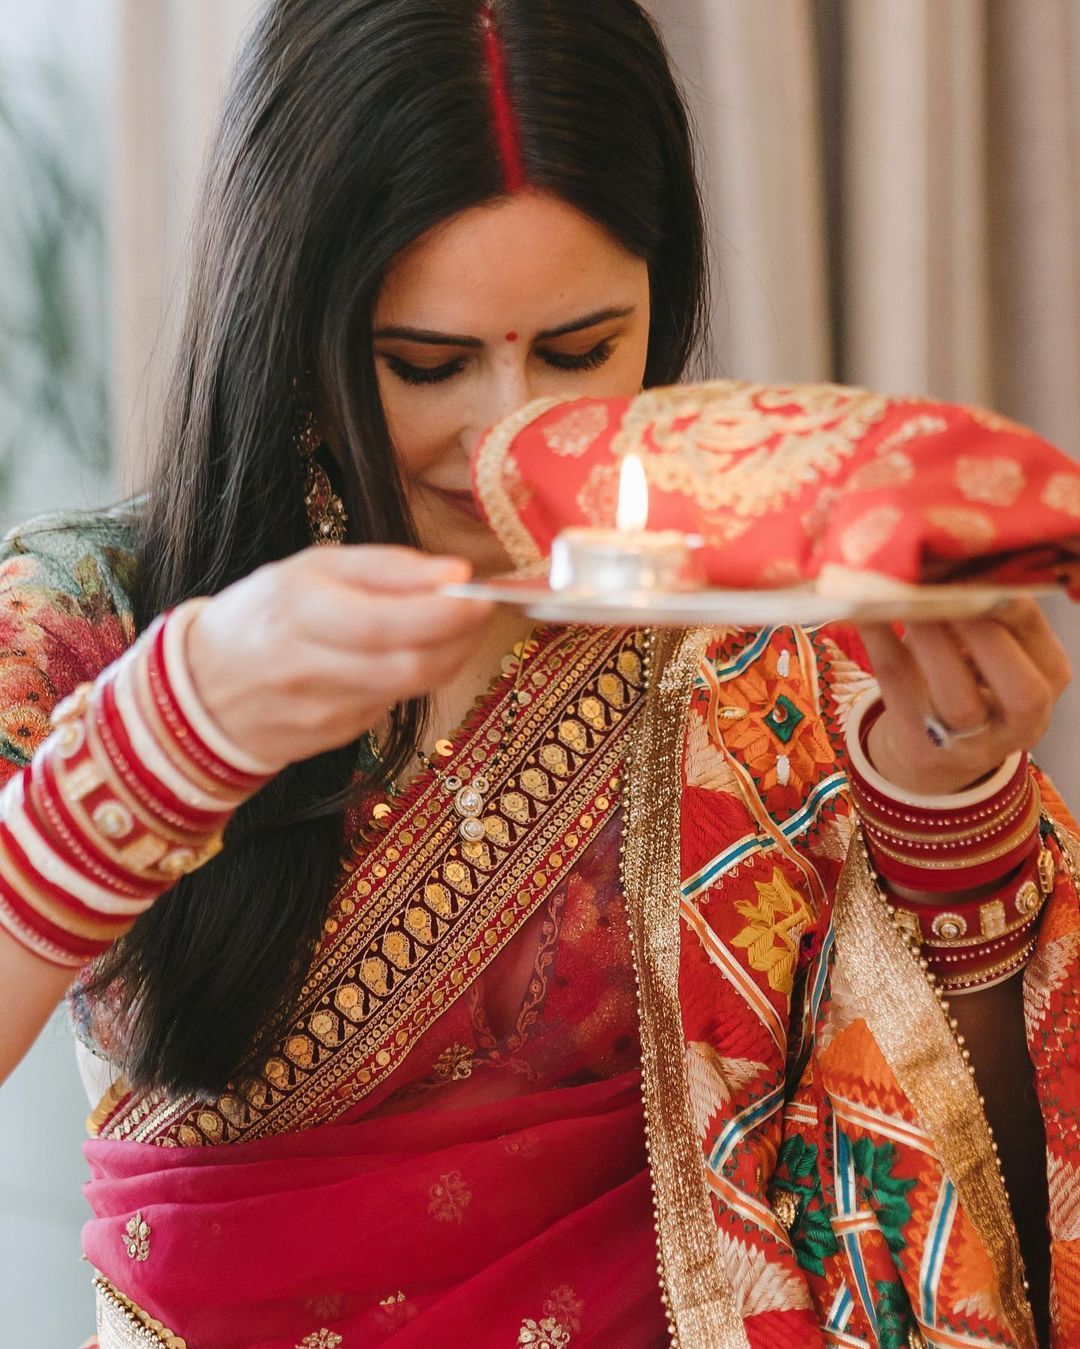 wedding saree for bride